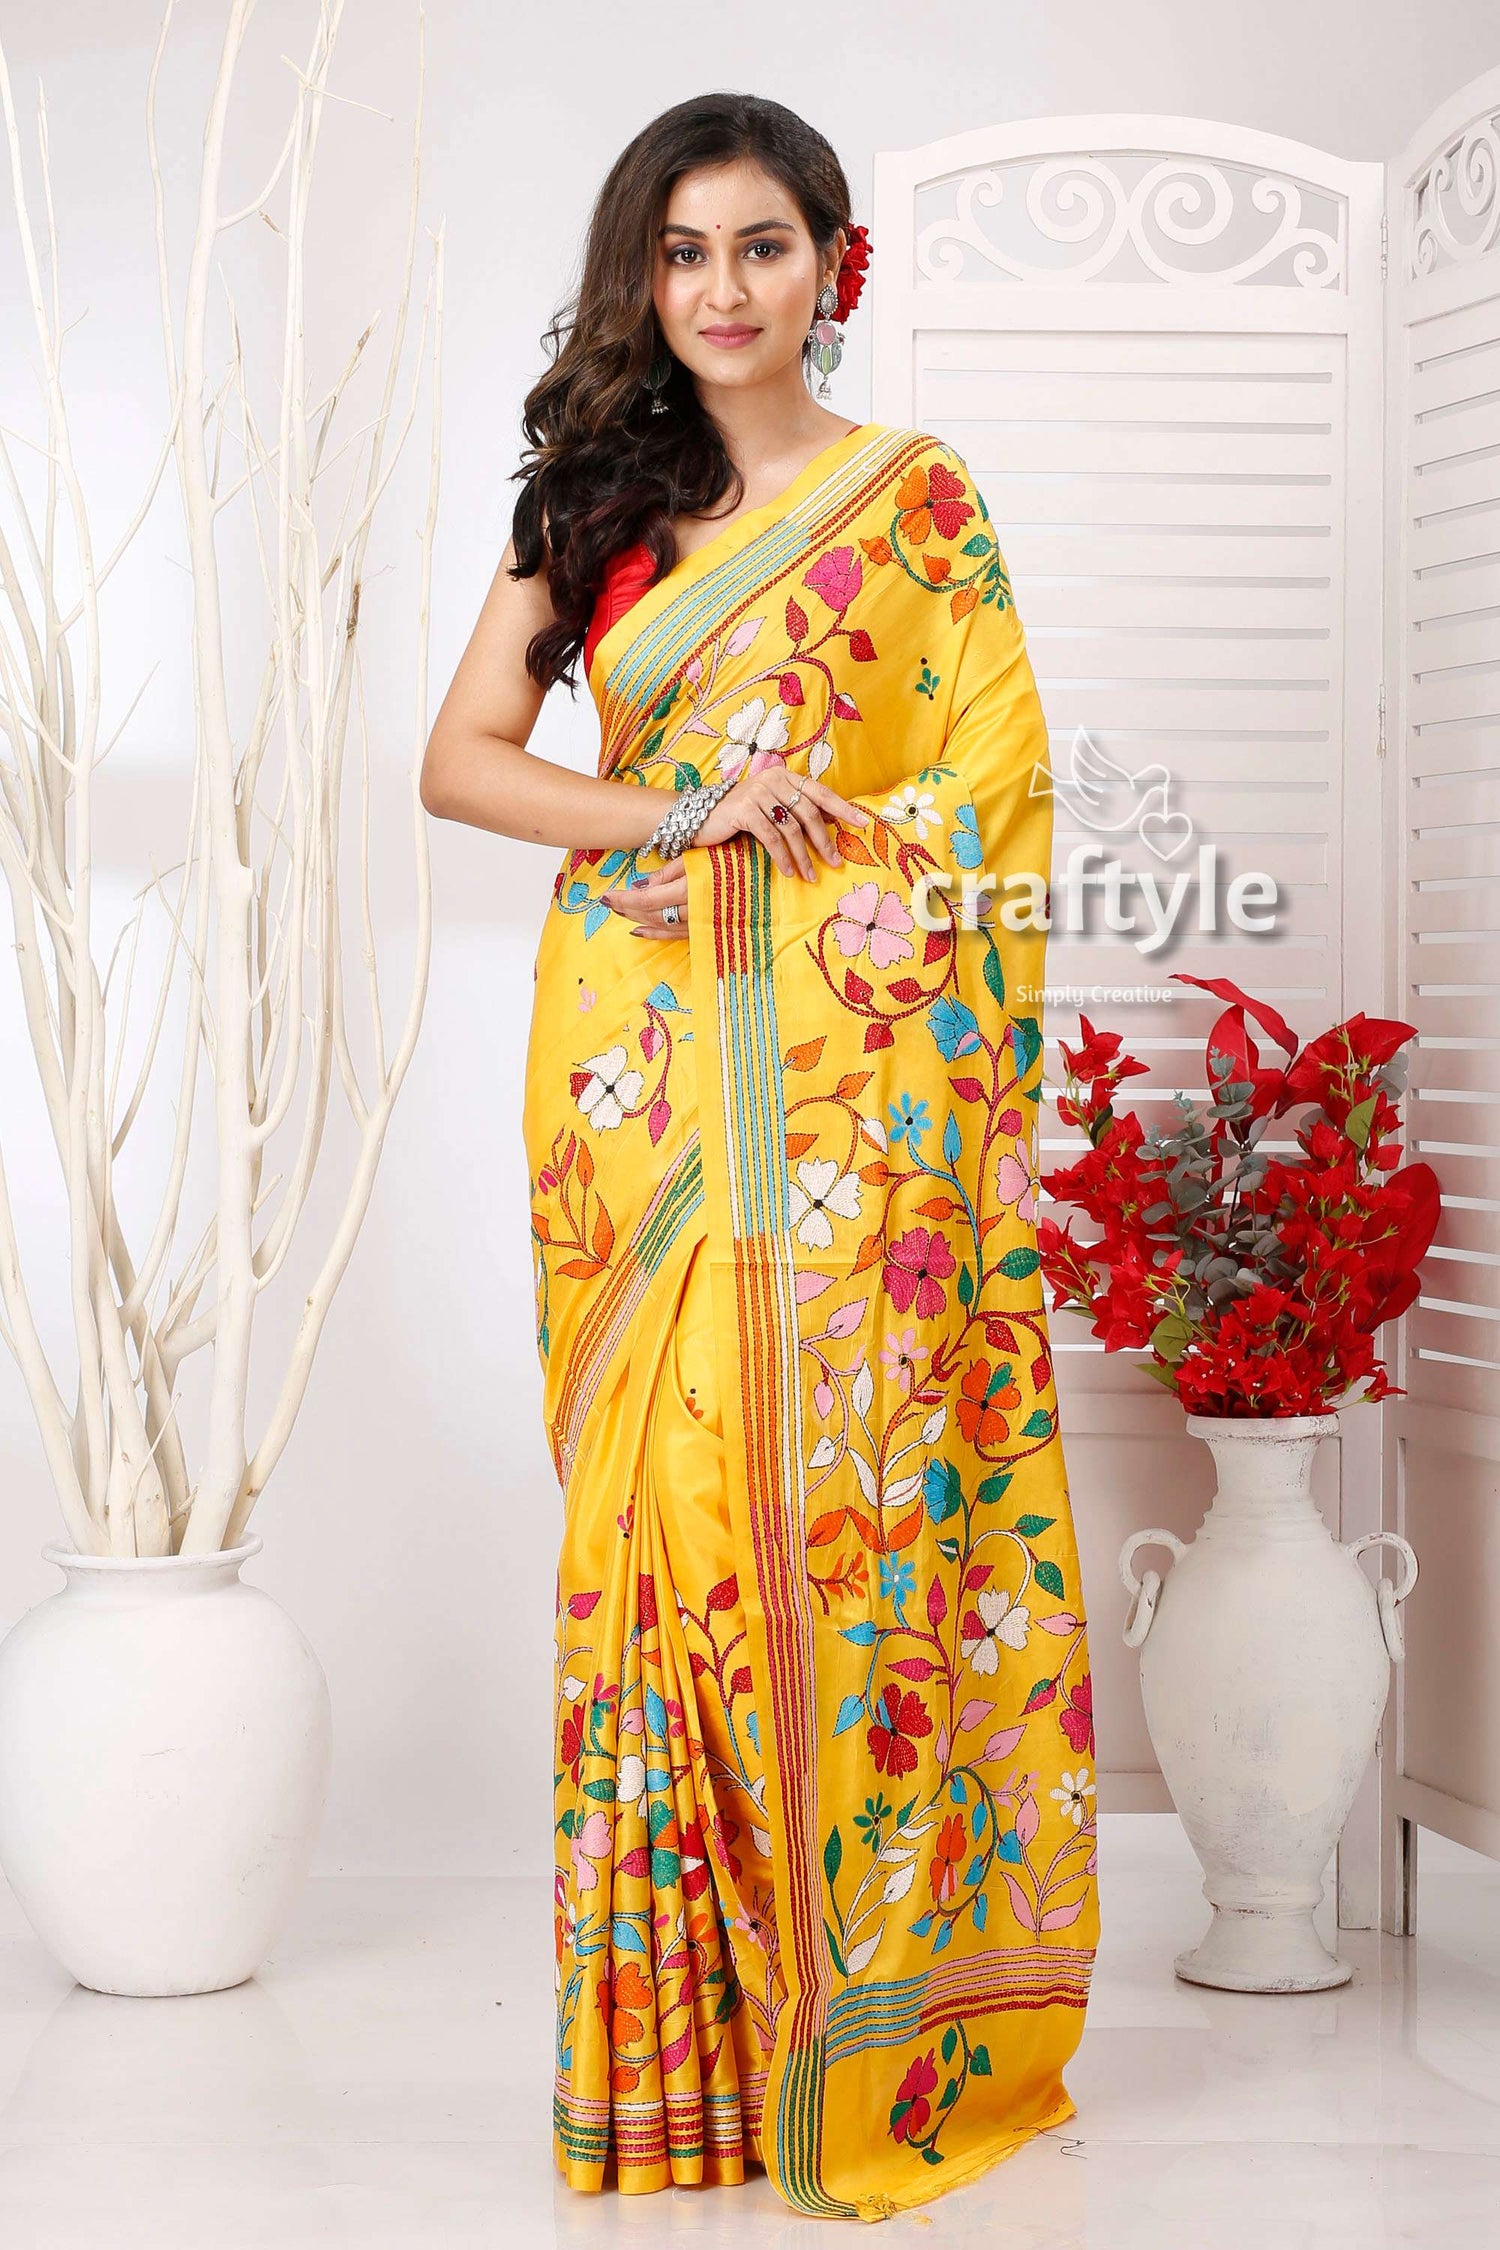 Marigold Yellow Flower Pattern Exclusive Kantha Silk Saree - Craftyle